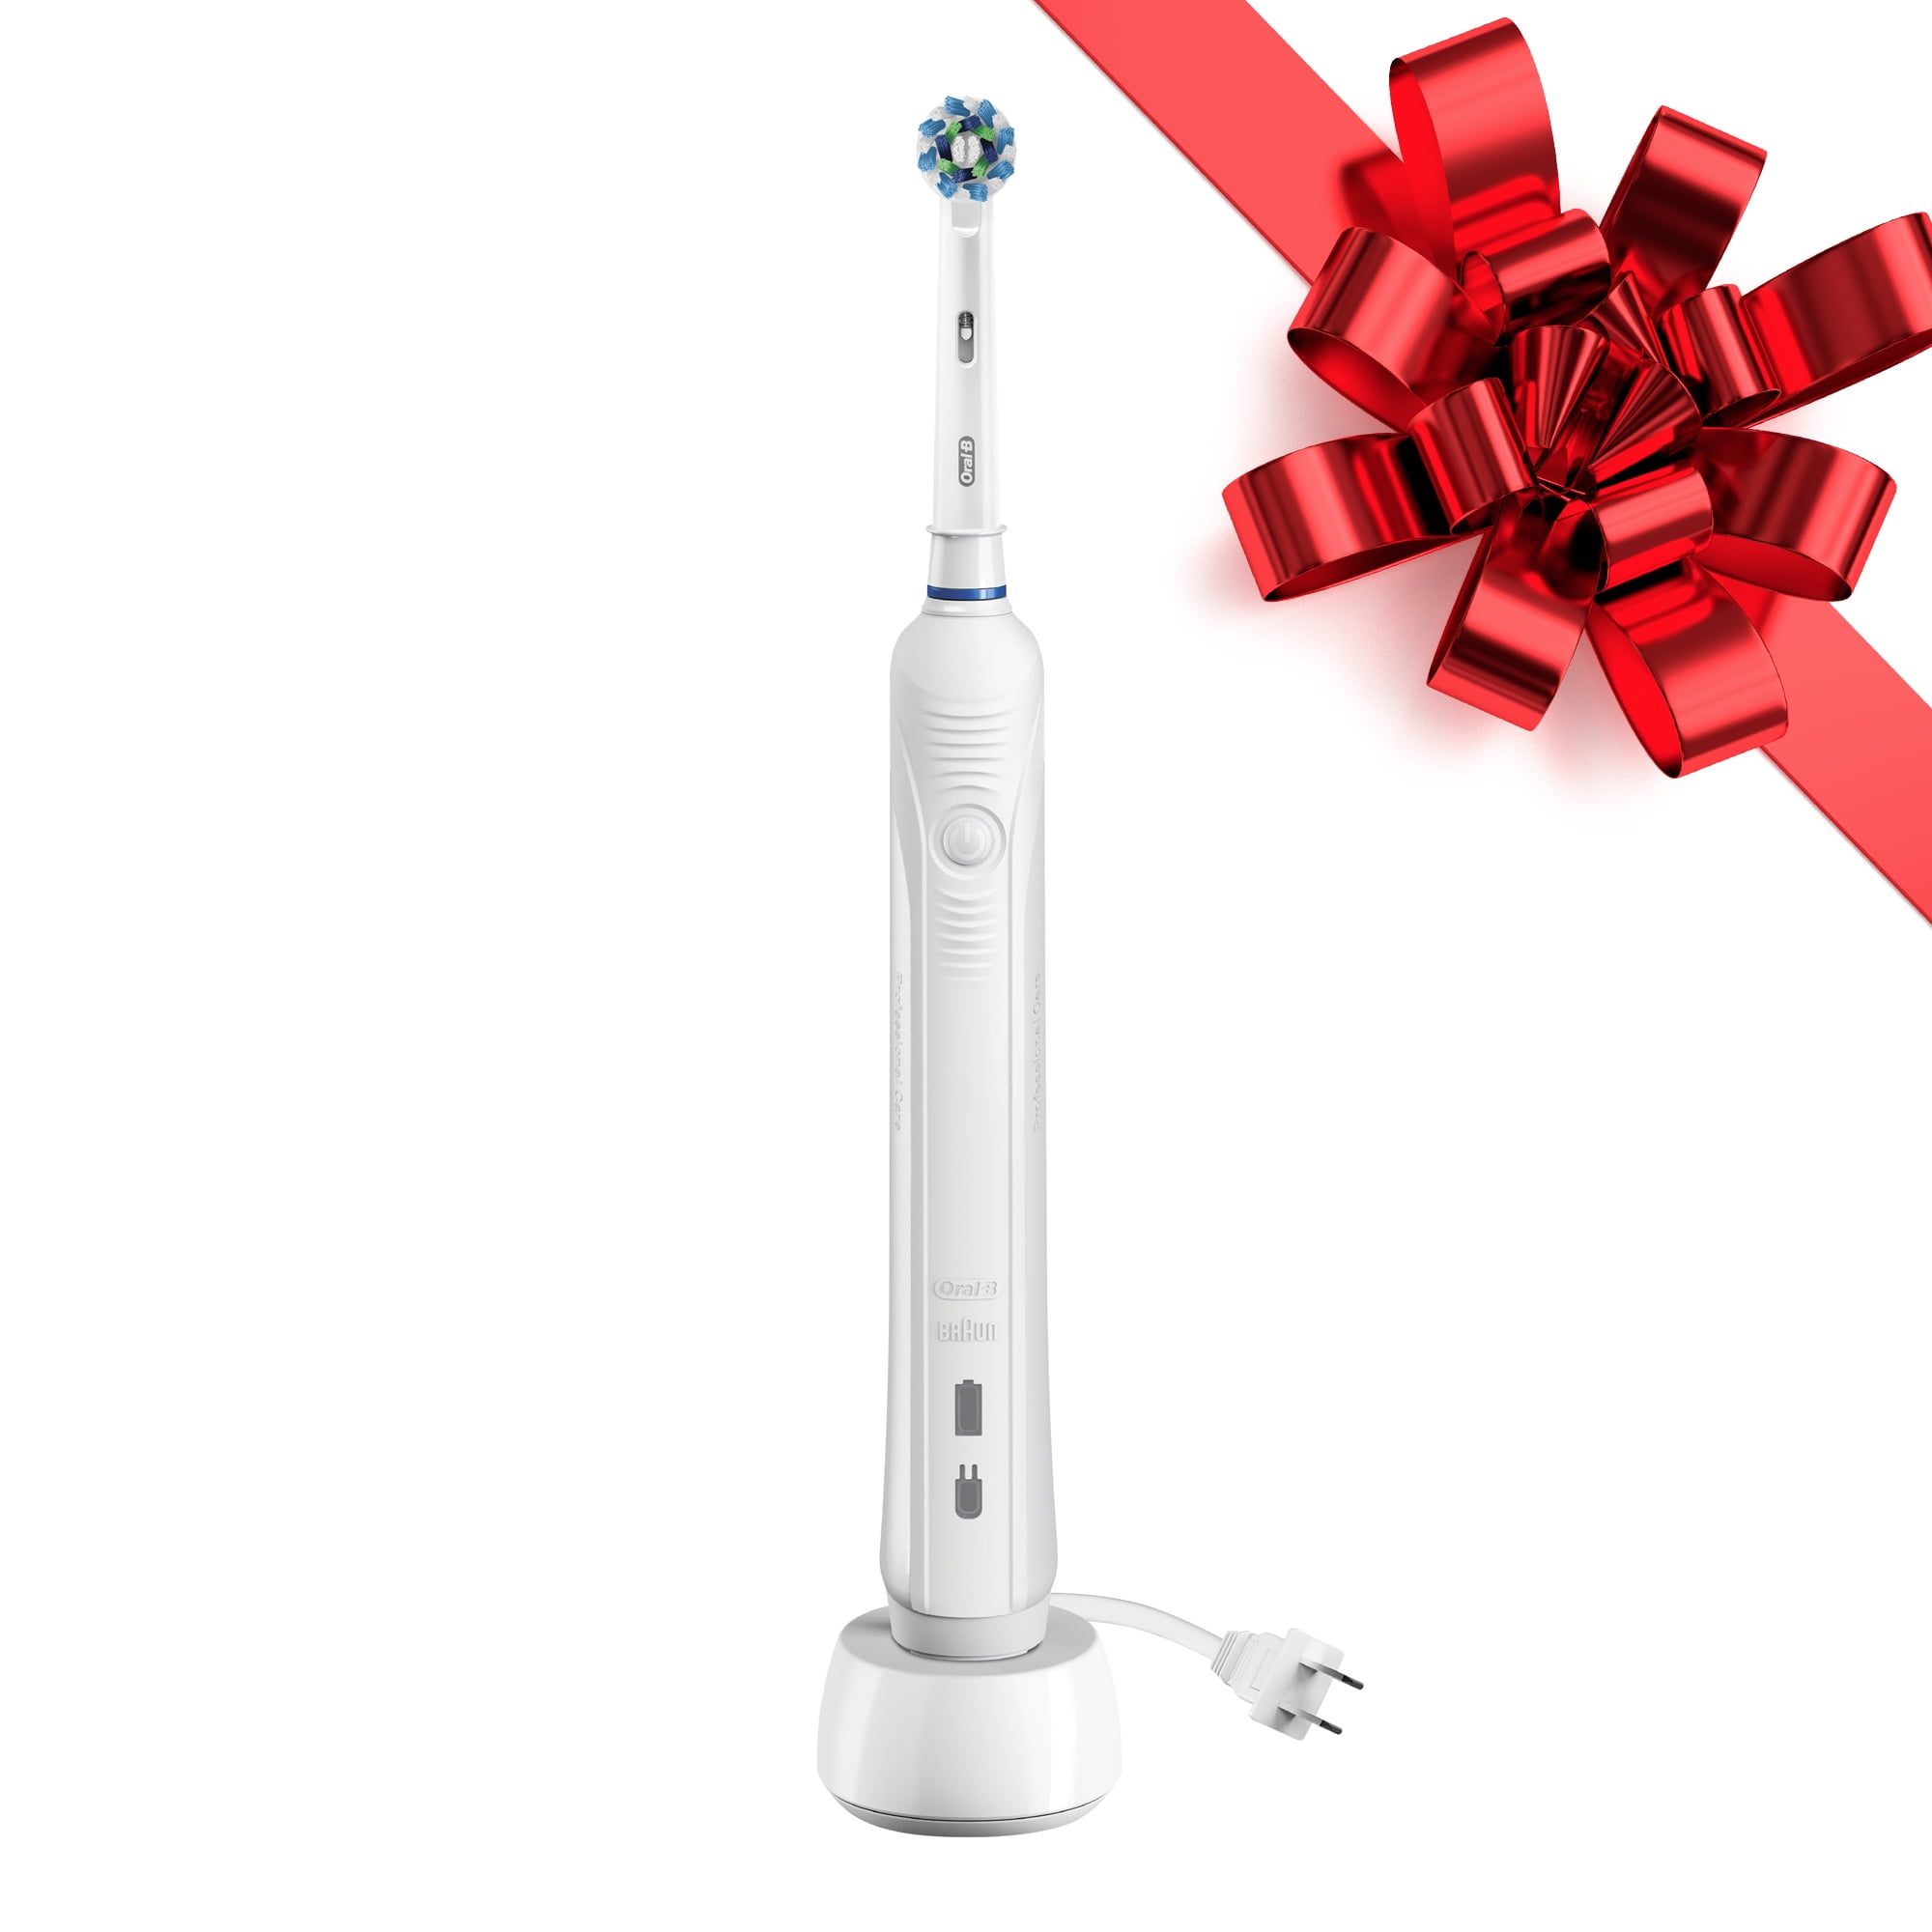 Walmart Oral B Electric Toothbrush Rebate